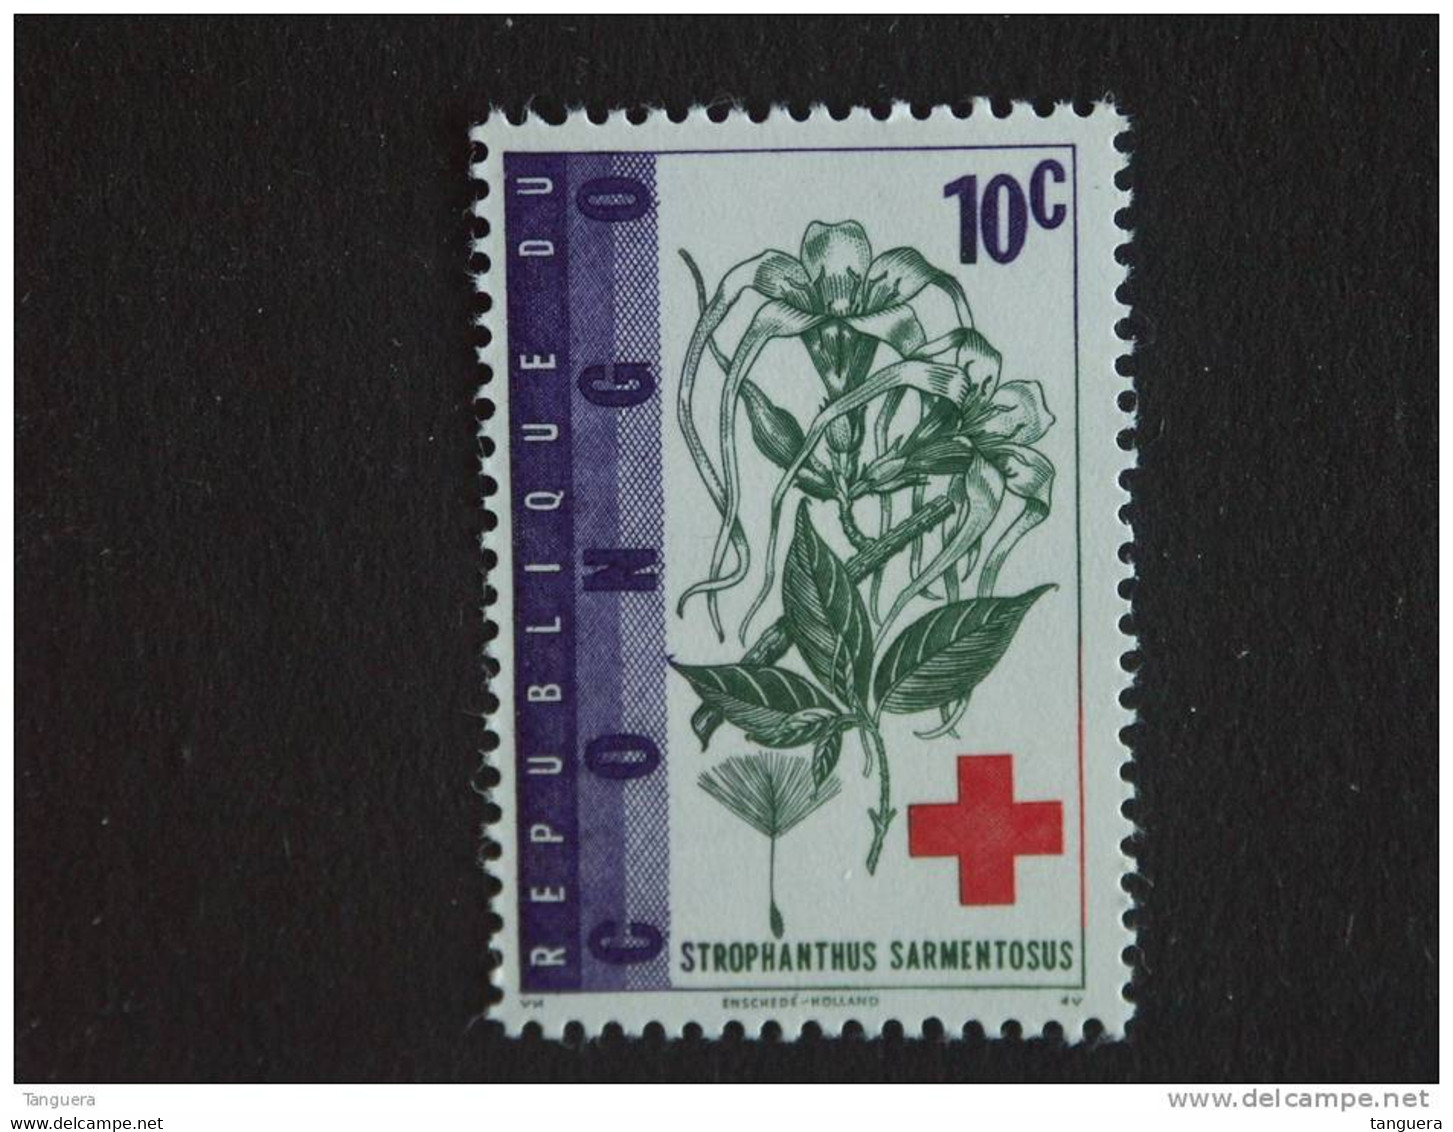 Congo Republique Republiek 1963 Rode Kruis Croix Rouge Strophanthus Plante Yv COB 495 MNH ** - Ungebraucht